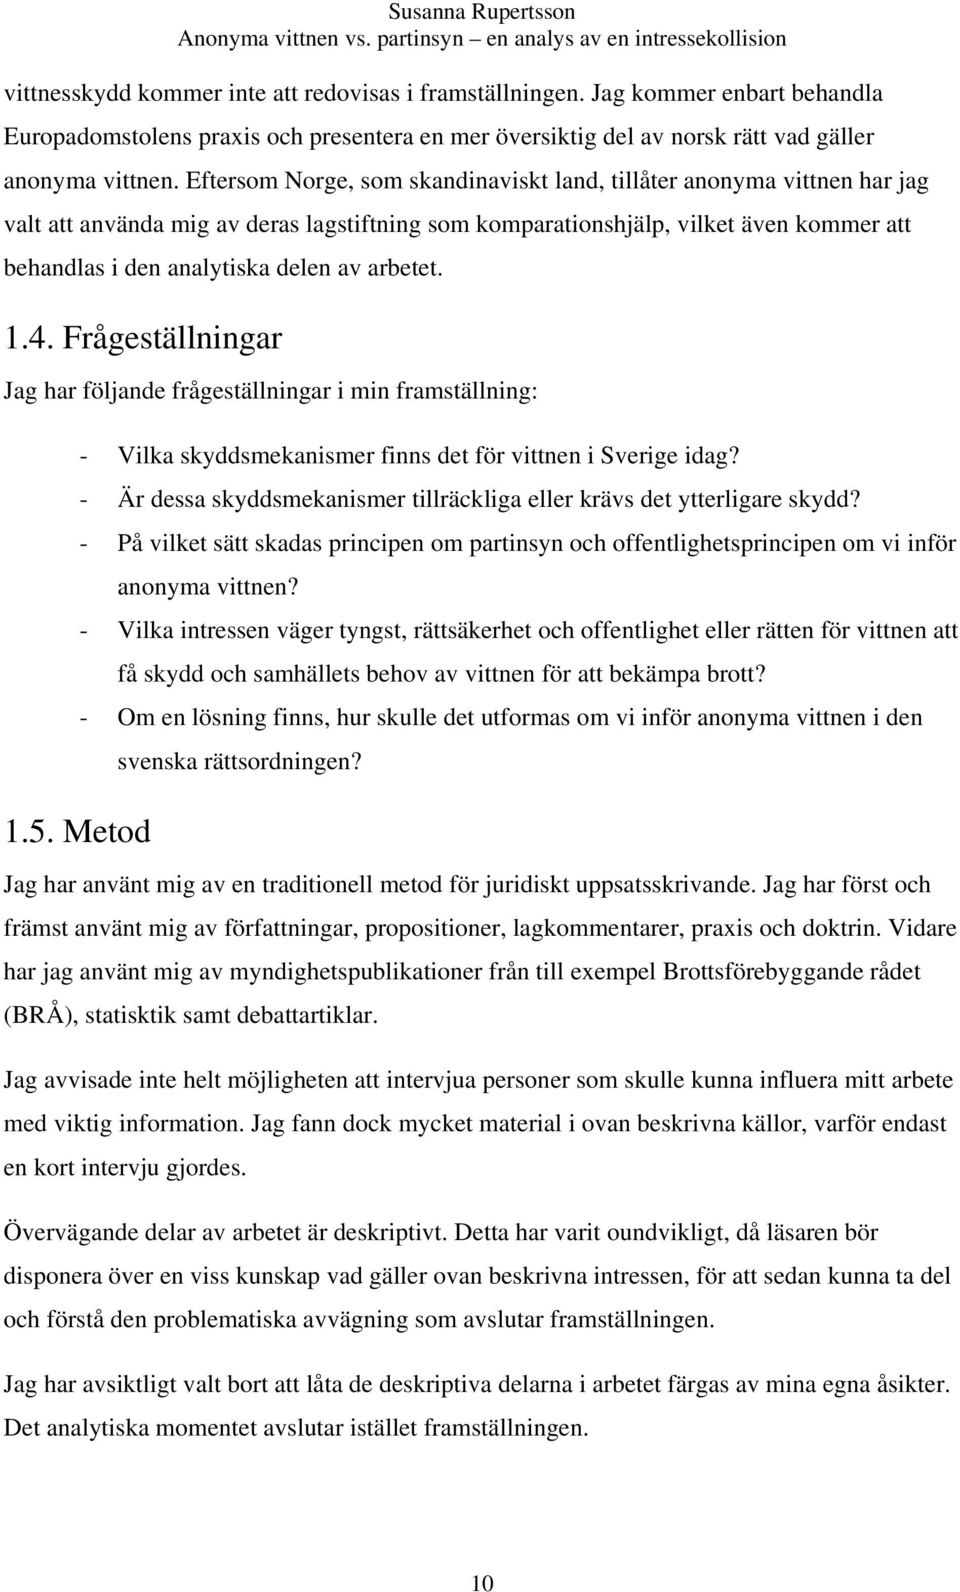 arbetet. 1.4. Frågeställningar Jag har följande frågeställningar i min framställning: - Vilka skyddsmekanismer finns det för vittnen i Sverige idag?